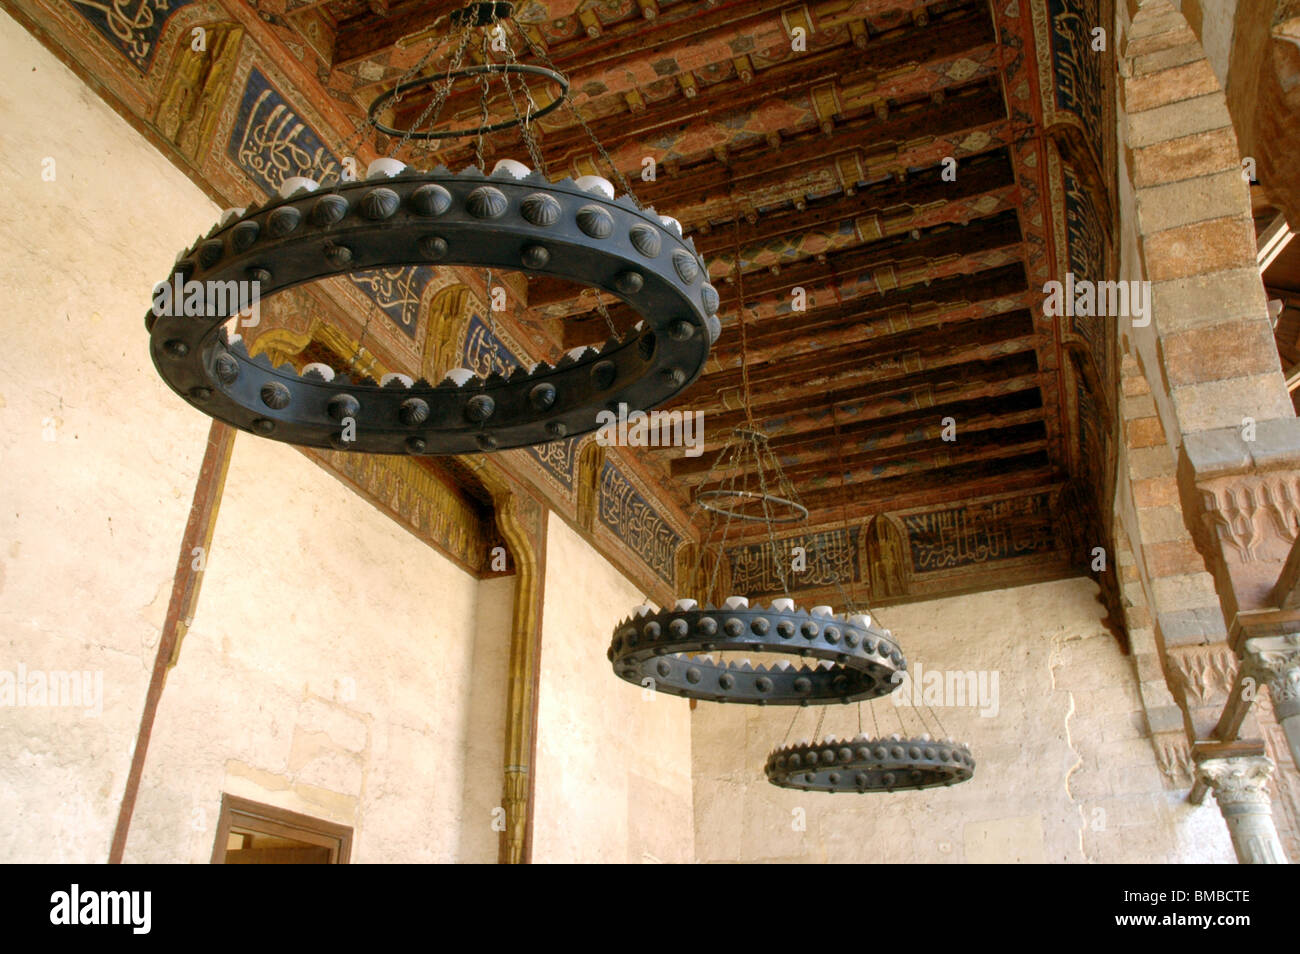 Candelabros de hierro y techo de madera decorado con el alfabeto árabe desde el siglo XIV, época mameluca Amir Taz palacio medieval en El Cairo, Egipto. Foto de stock